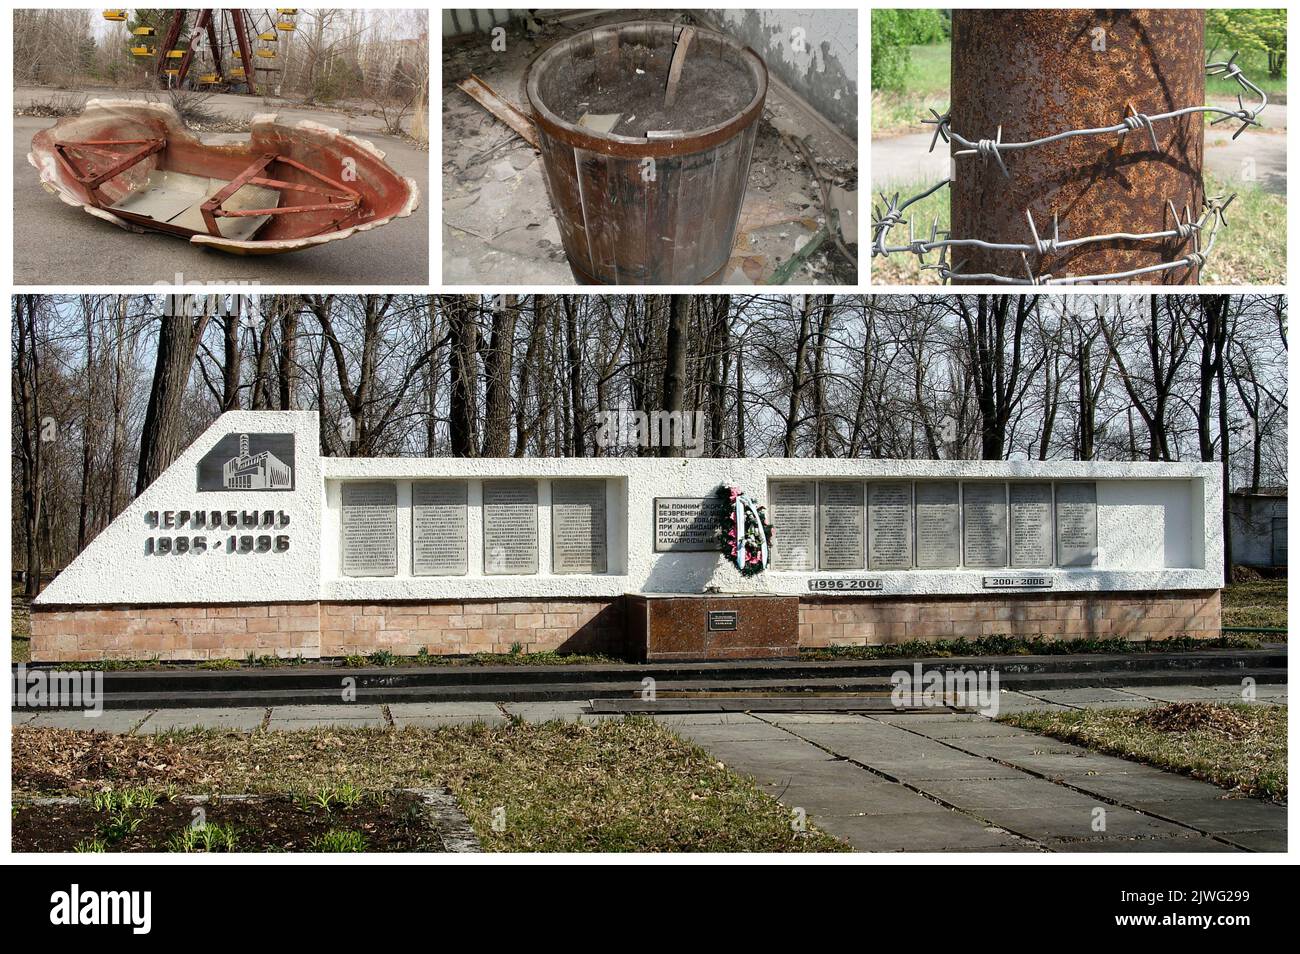 La città spettrale di Pripyat (Ukrain) famosa per il disastro di Chernobyl, nella sua zona di esclusione, ancora radioattiva e pericolosa. (7) Foto Stock